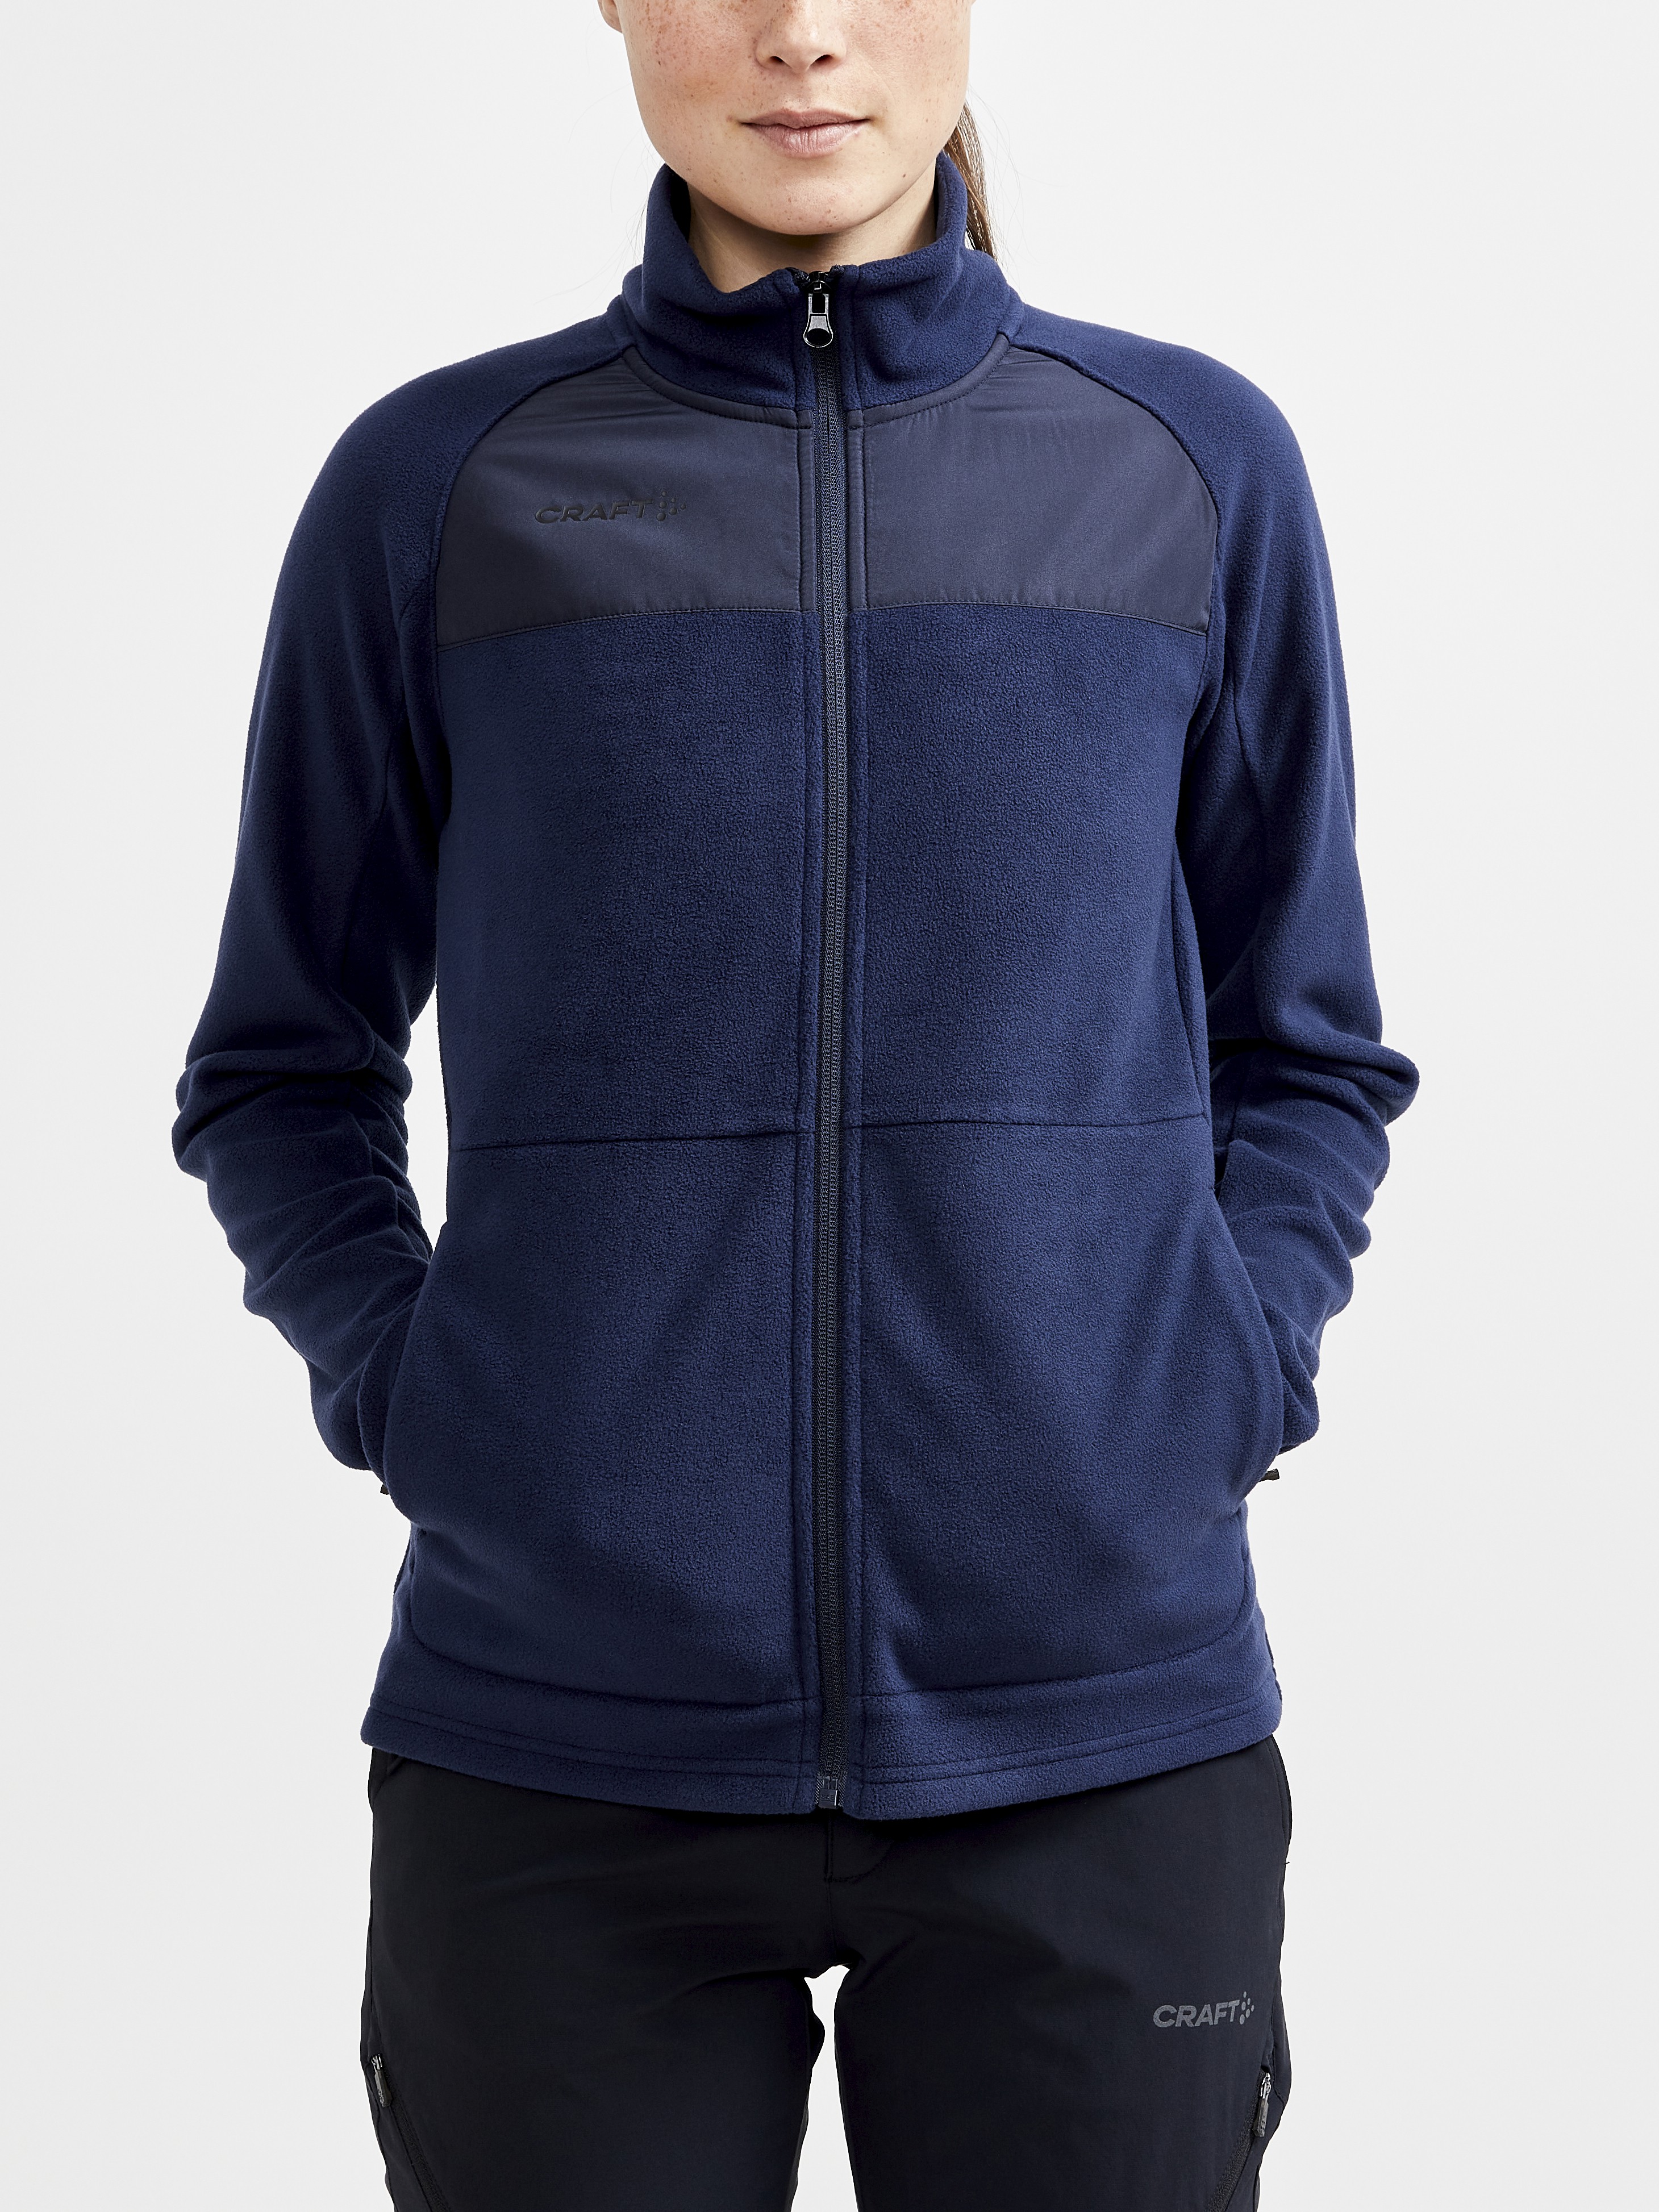 MAC Navy Fleece Jacket, Women's Full Zip – Way Nuff Stuff